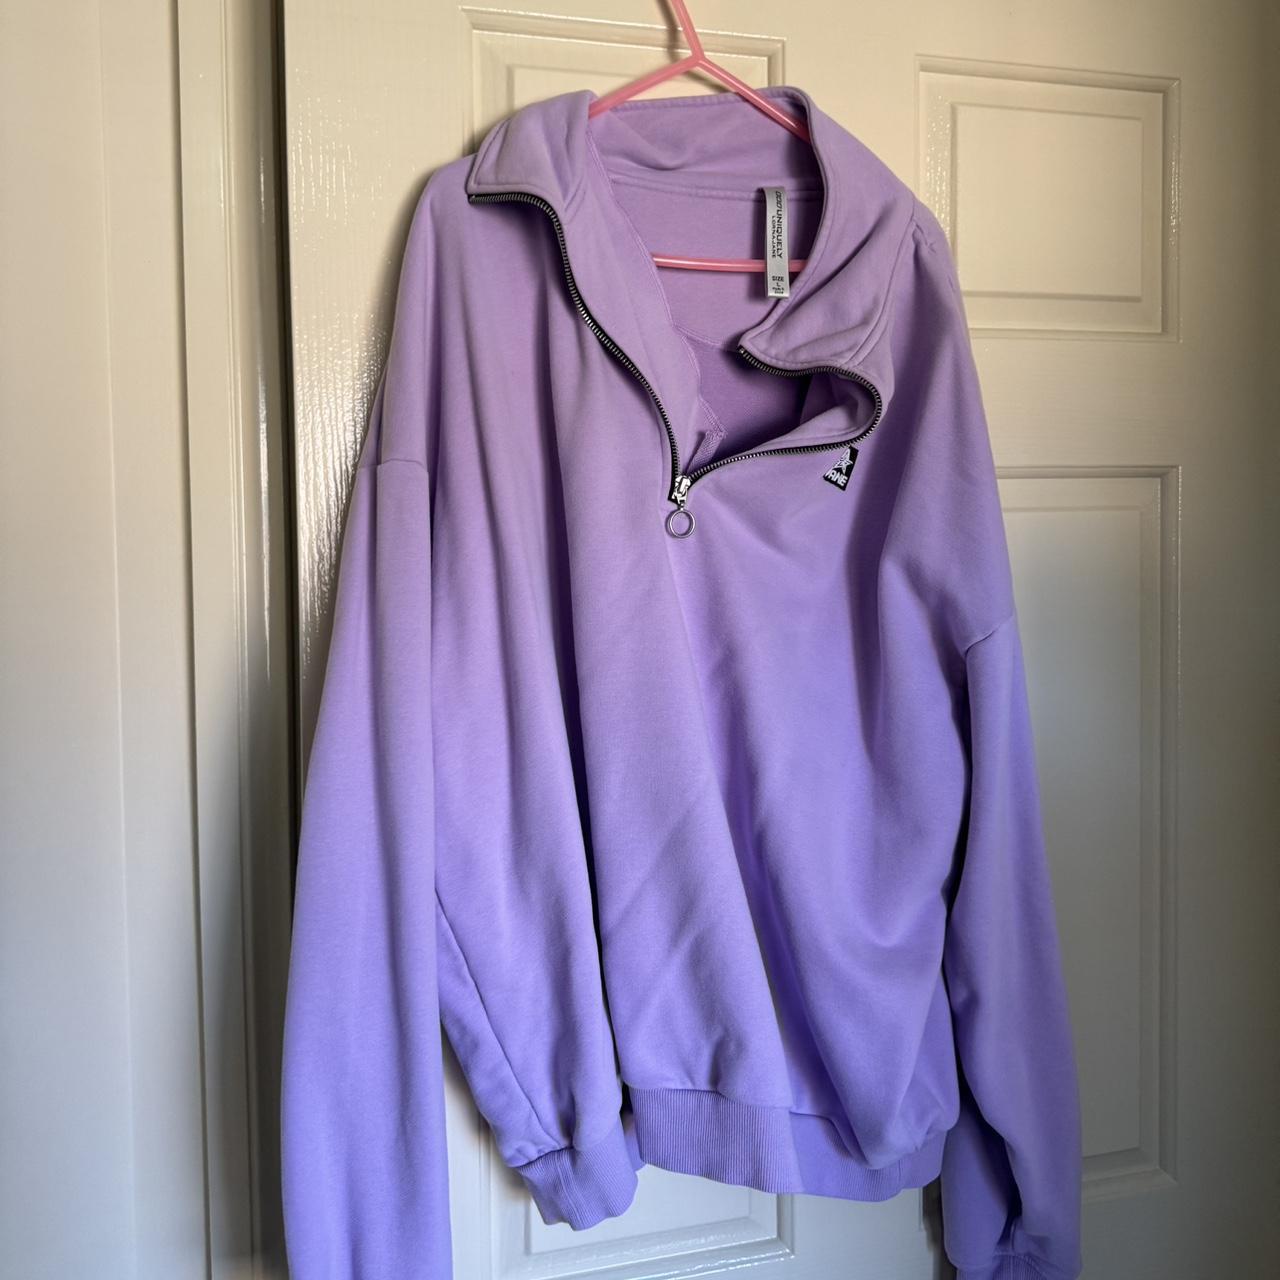 Lorna Jane Soft Lilac LJ Sport Quarter Zip Sweatshirt, Size Small